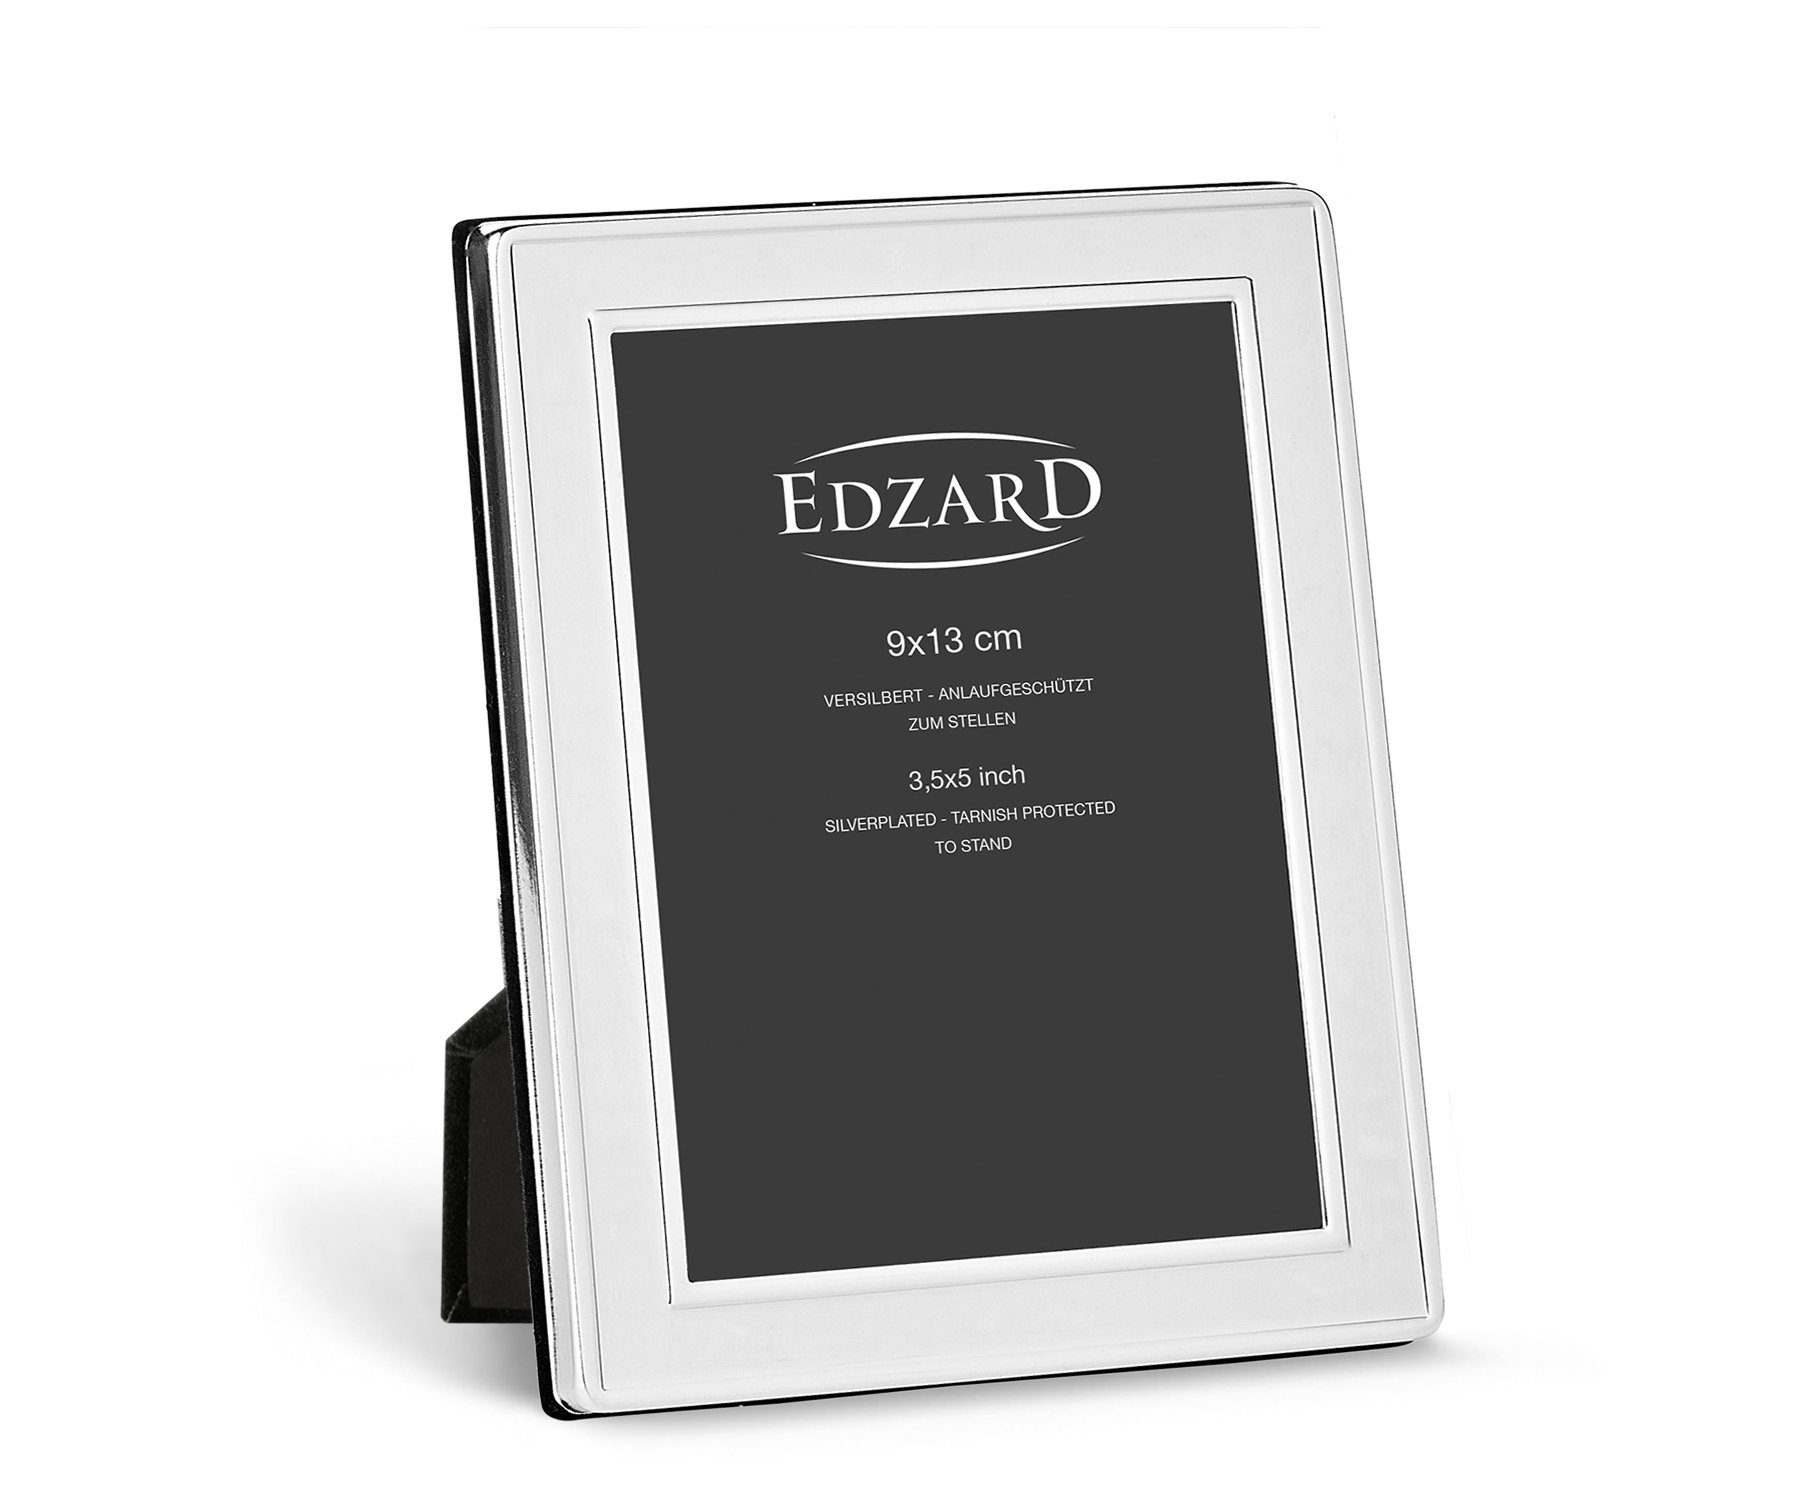 EDZARD Bilderrahmen Nardo, versilbert und anlaufgeschützt, für 9x13 cm Foto